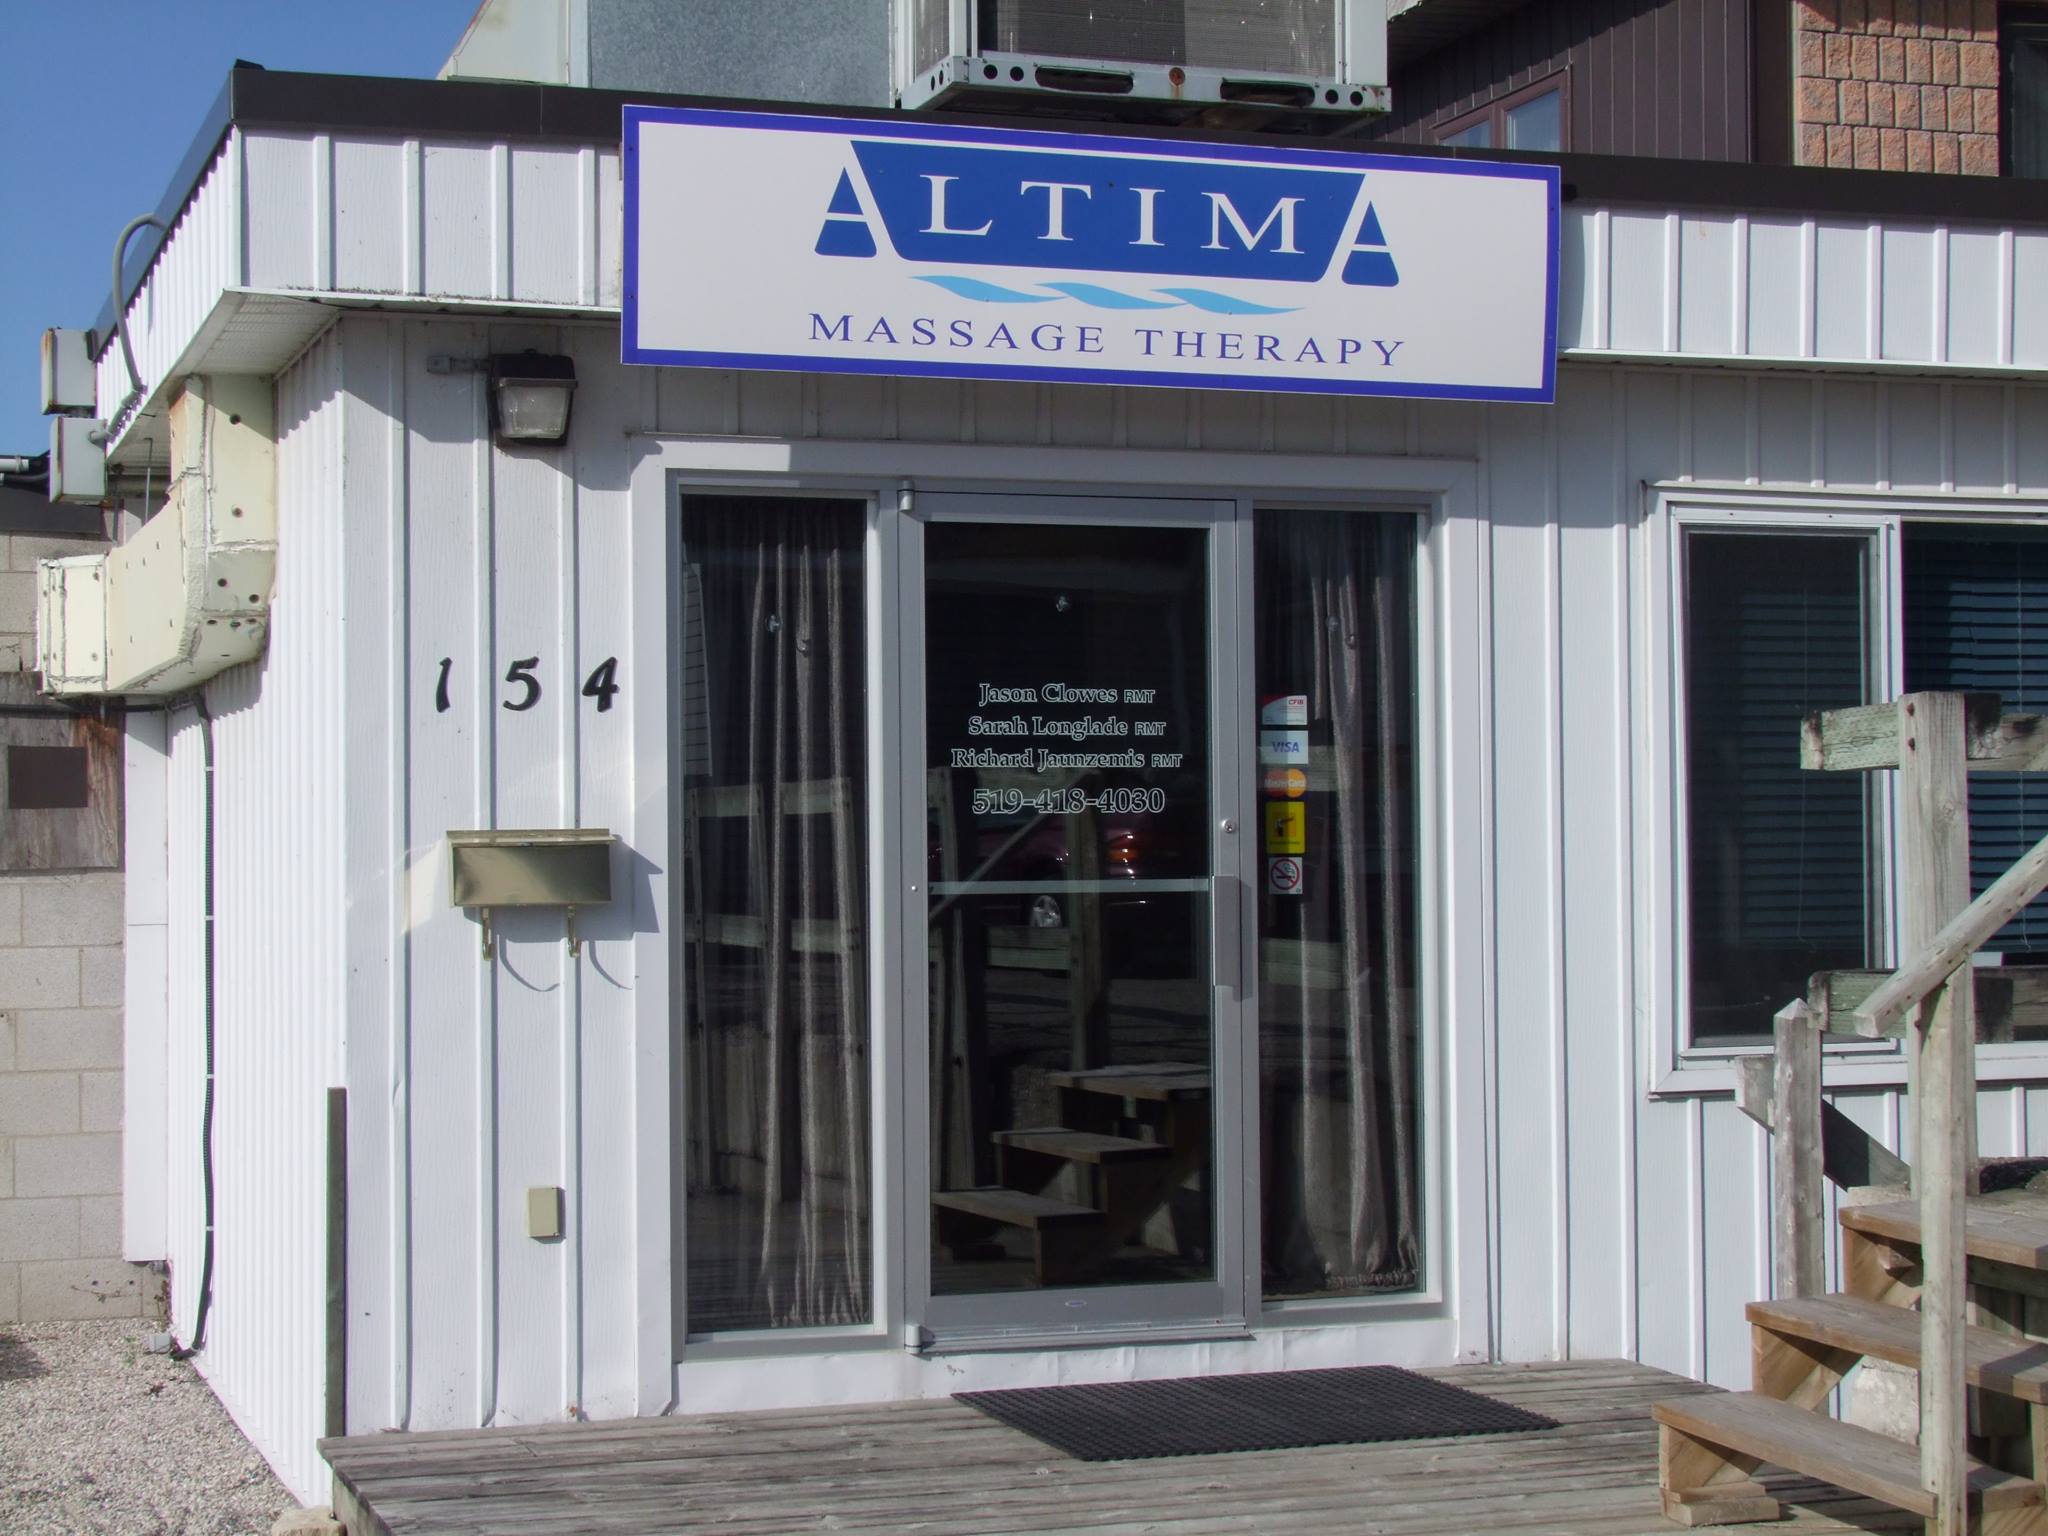 Altima Massage Therapy Smith's Square, 154 Elizabeth St W, Listowel Ontario N4W 1C9